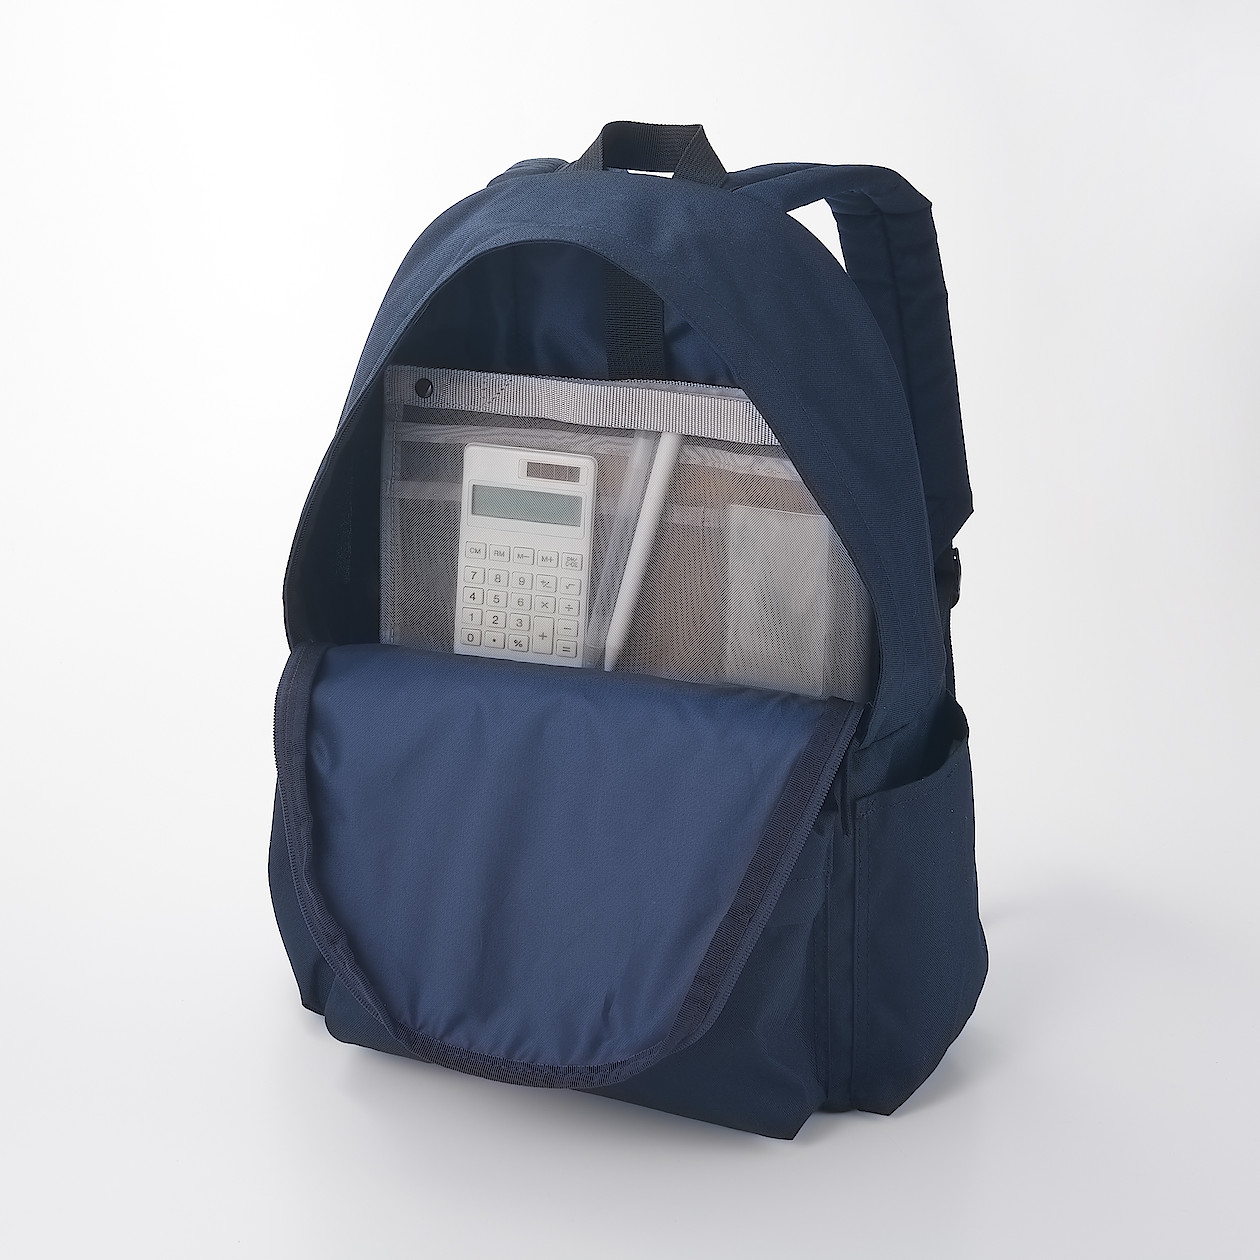 無印良品(MUJI) ナイロンメッシュバッグインバッグ A4サイズ用 タテ型の商品画像サムネ4 